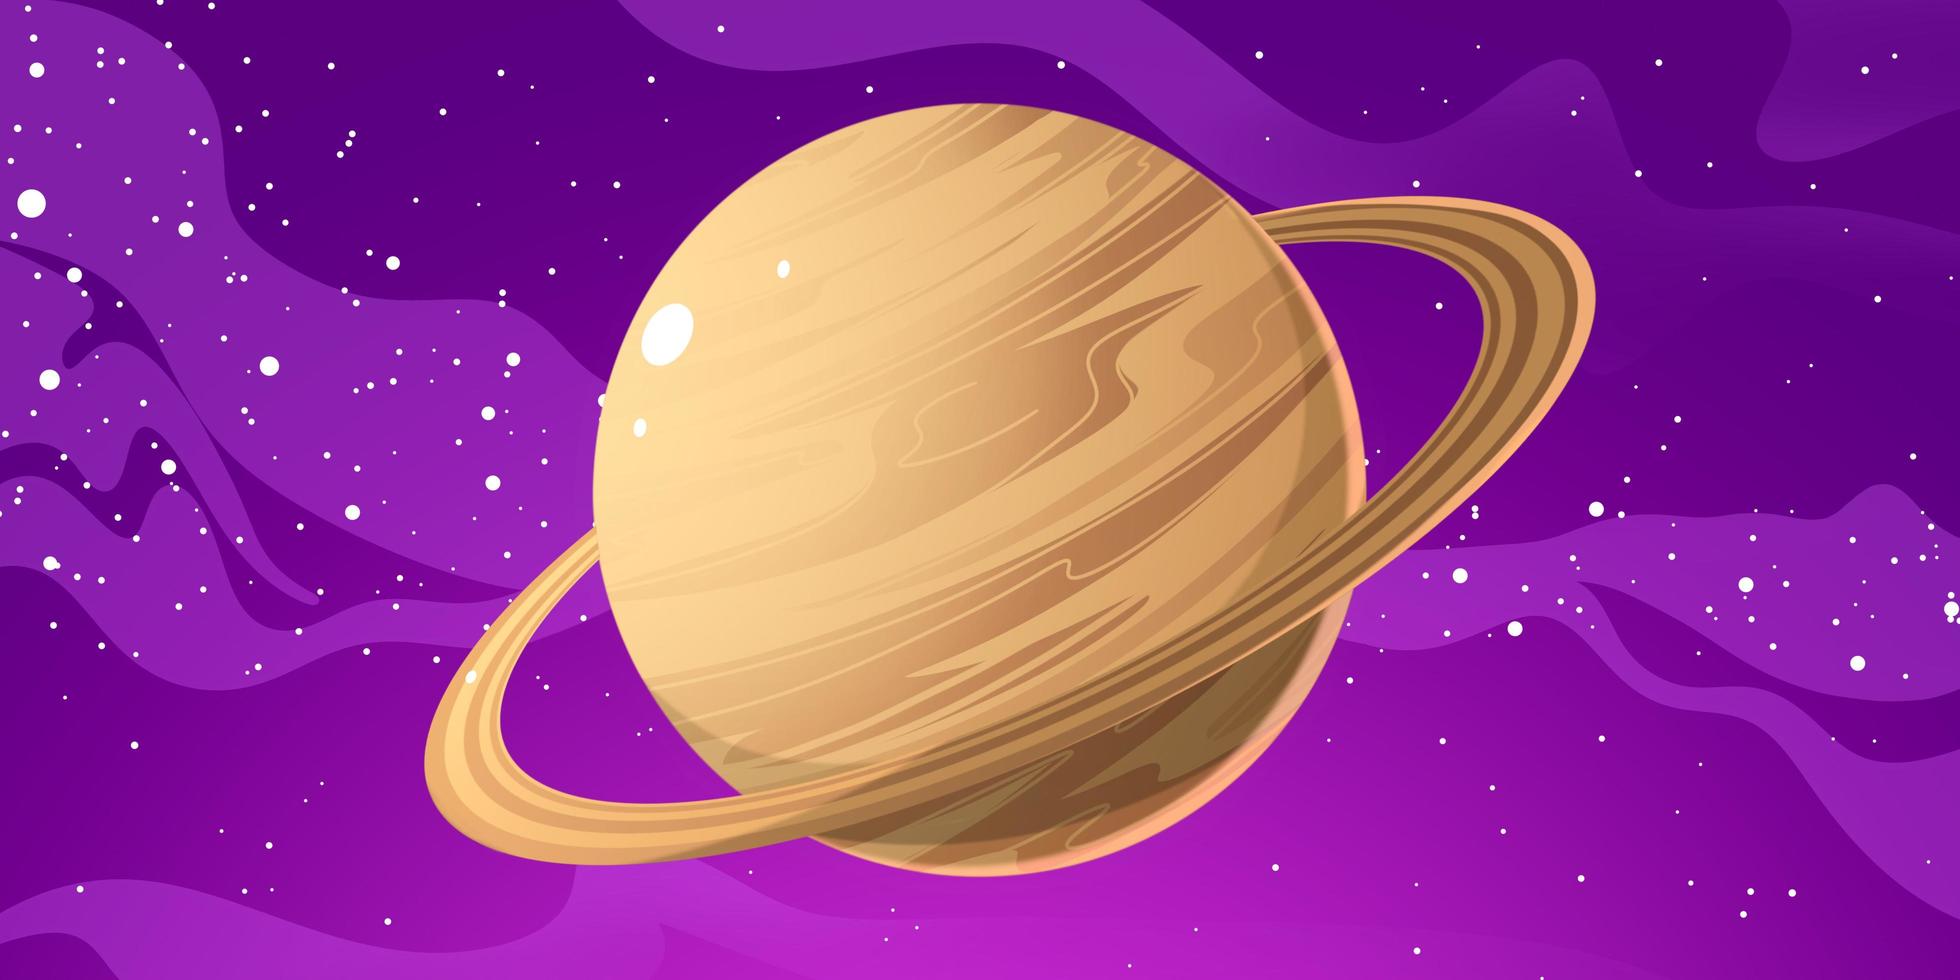 ilustração do planeta Saturno. Saturno é o segundo maior planeta depois de Júpiter no sistema solar. Saturno tem um anel magnífico então Saturno parece tão bonito foto